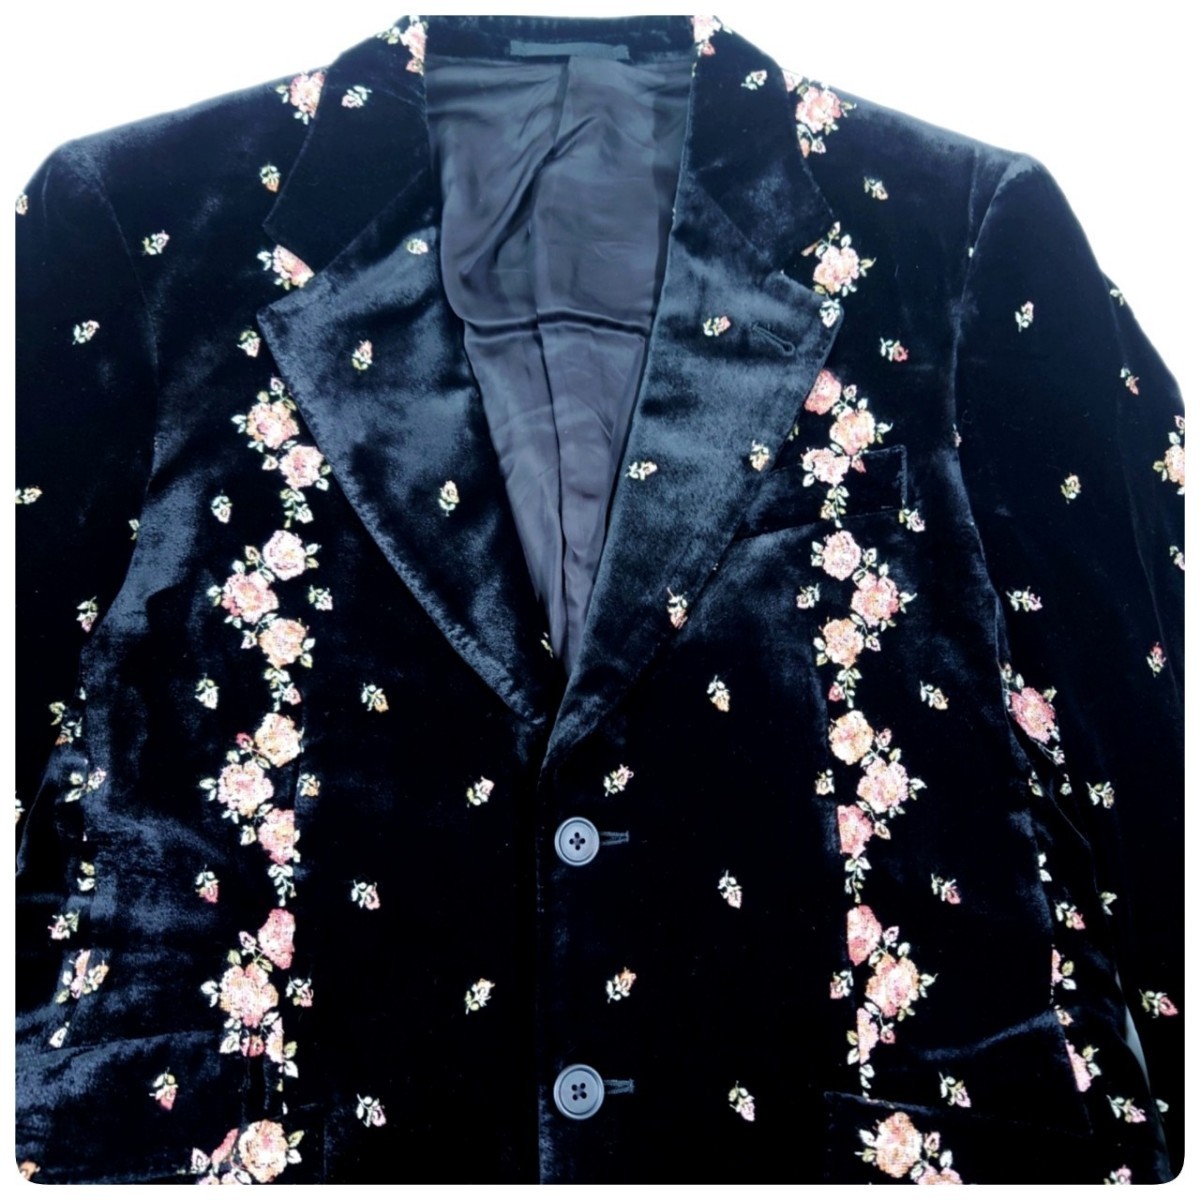  супер шедевр 17AW Paul Smith Paul Smith основной линия внутренний стандартный товар сделано в Японии высший класс цветочный принт вышивка искусственный шелк шелк велюр 2B tailored jacket M прекрасный товар 